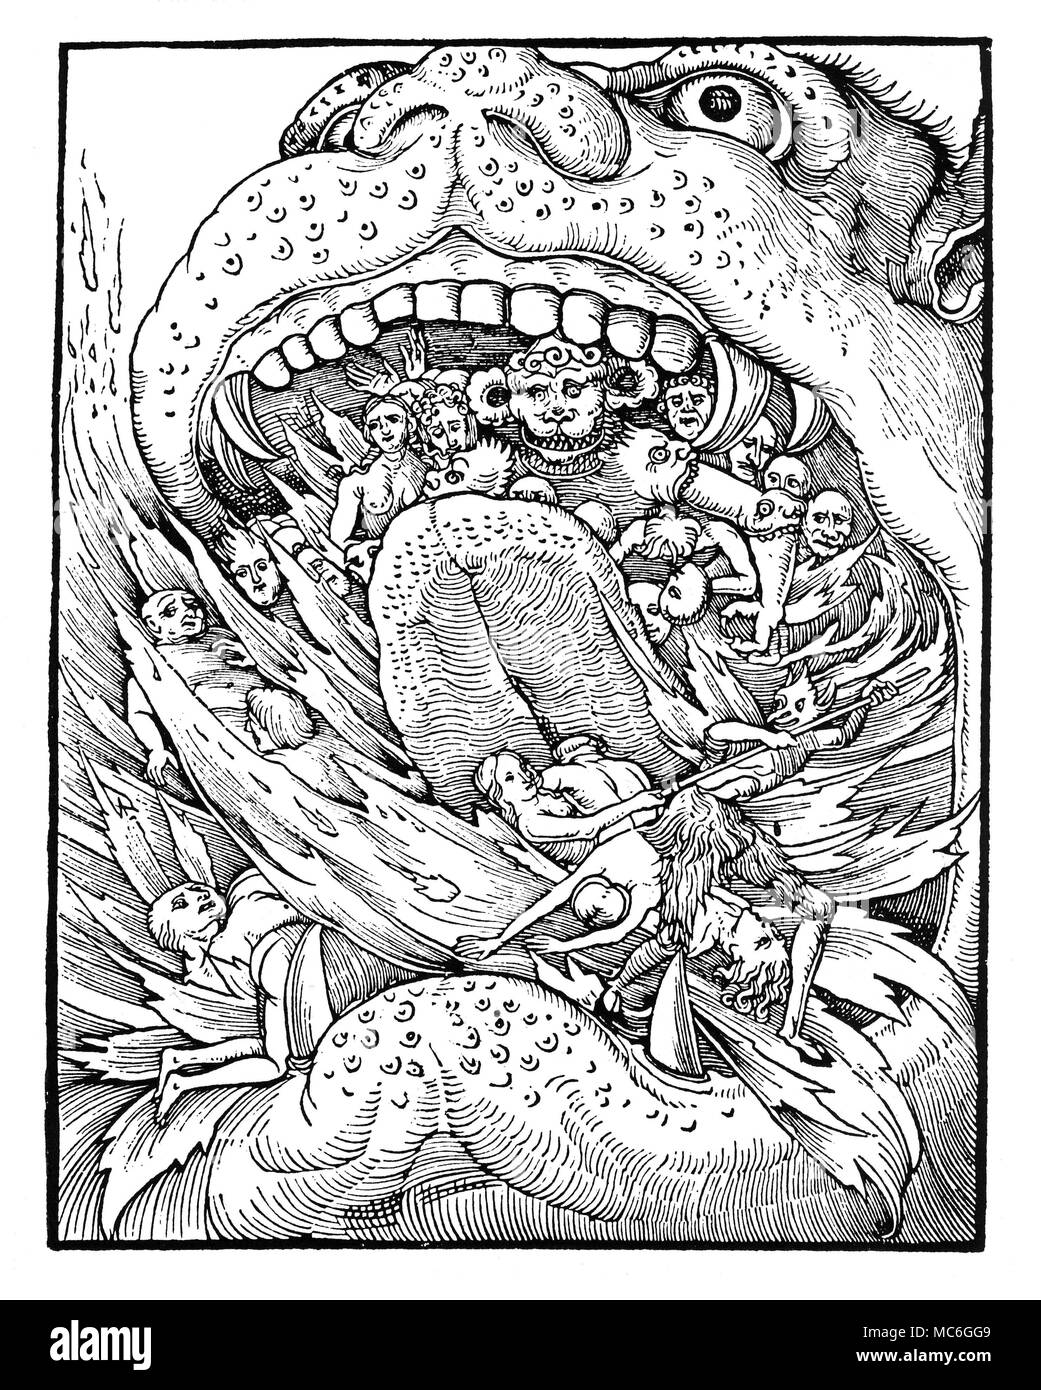 L'enfer l'entrée de l'enfer, représenté (dans le style de l'époque médiévale artistes) comme la bouche d'un monstre, avec des flammes qui sortent de sa bouche, et les damnés et leurs bourreaux visibles. Gravure sur bois de circa 1500. Banque D'Images